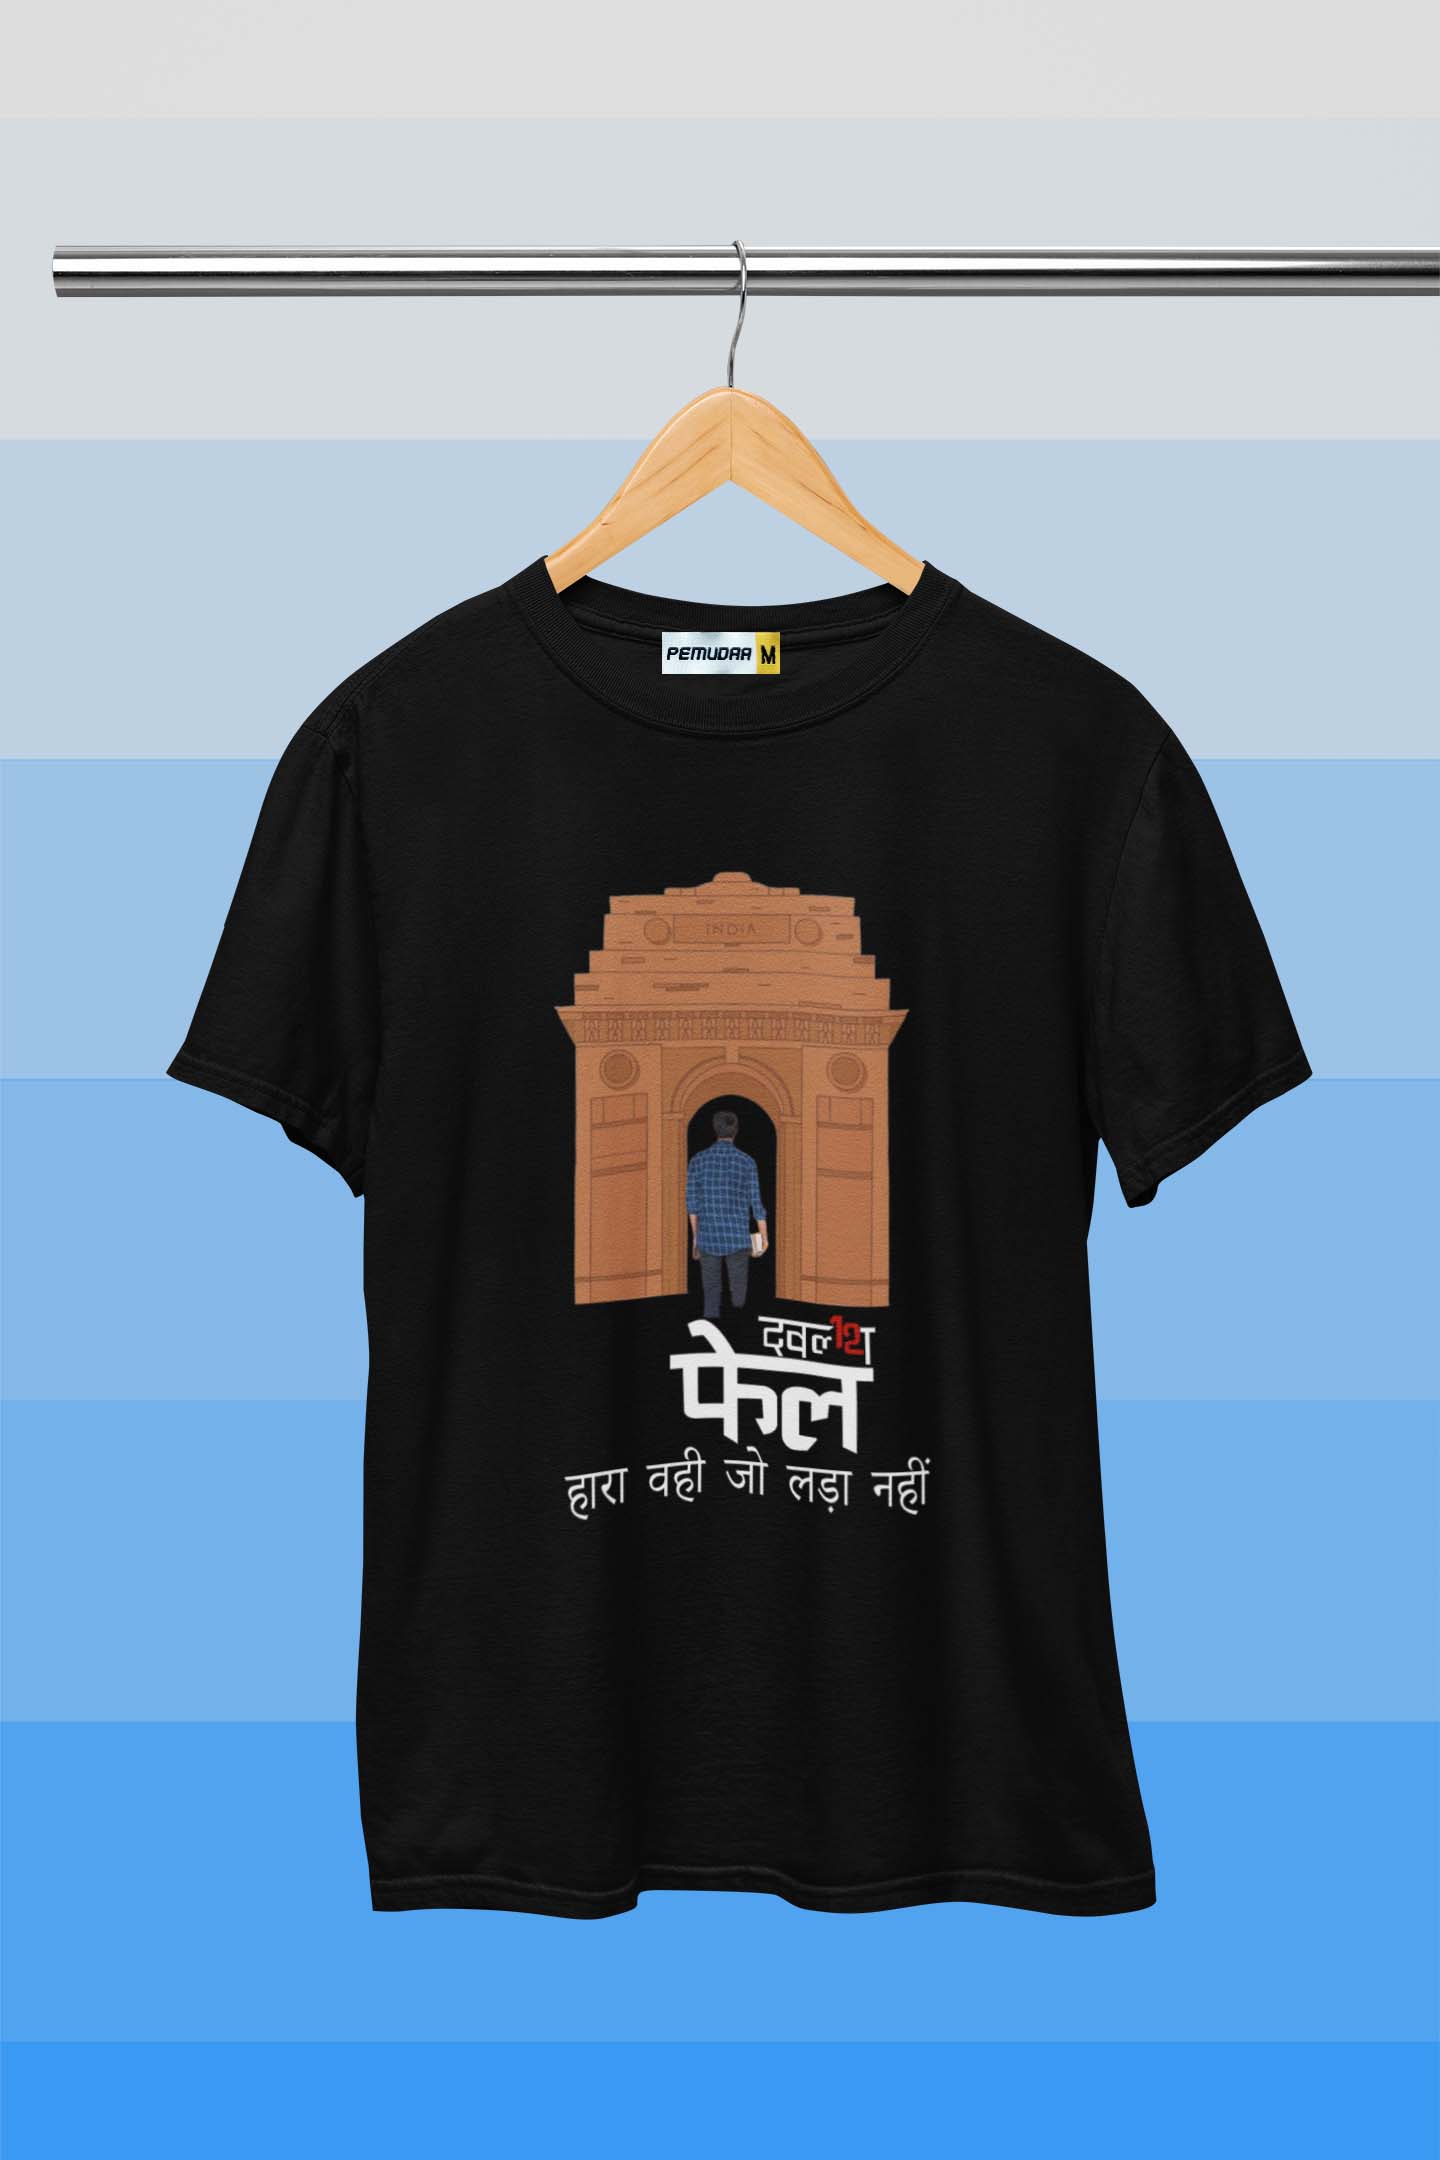 Hara Vahi Jo Lada Nahi - 12th Fail Graphic Printed T Shirt Black